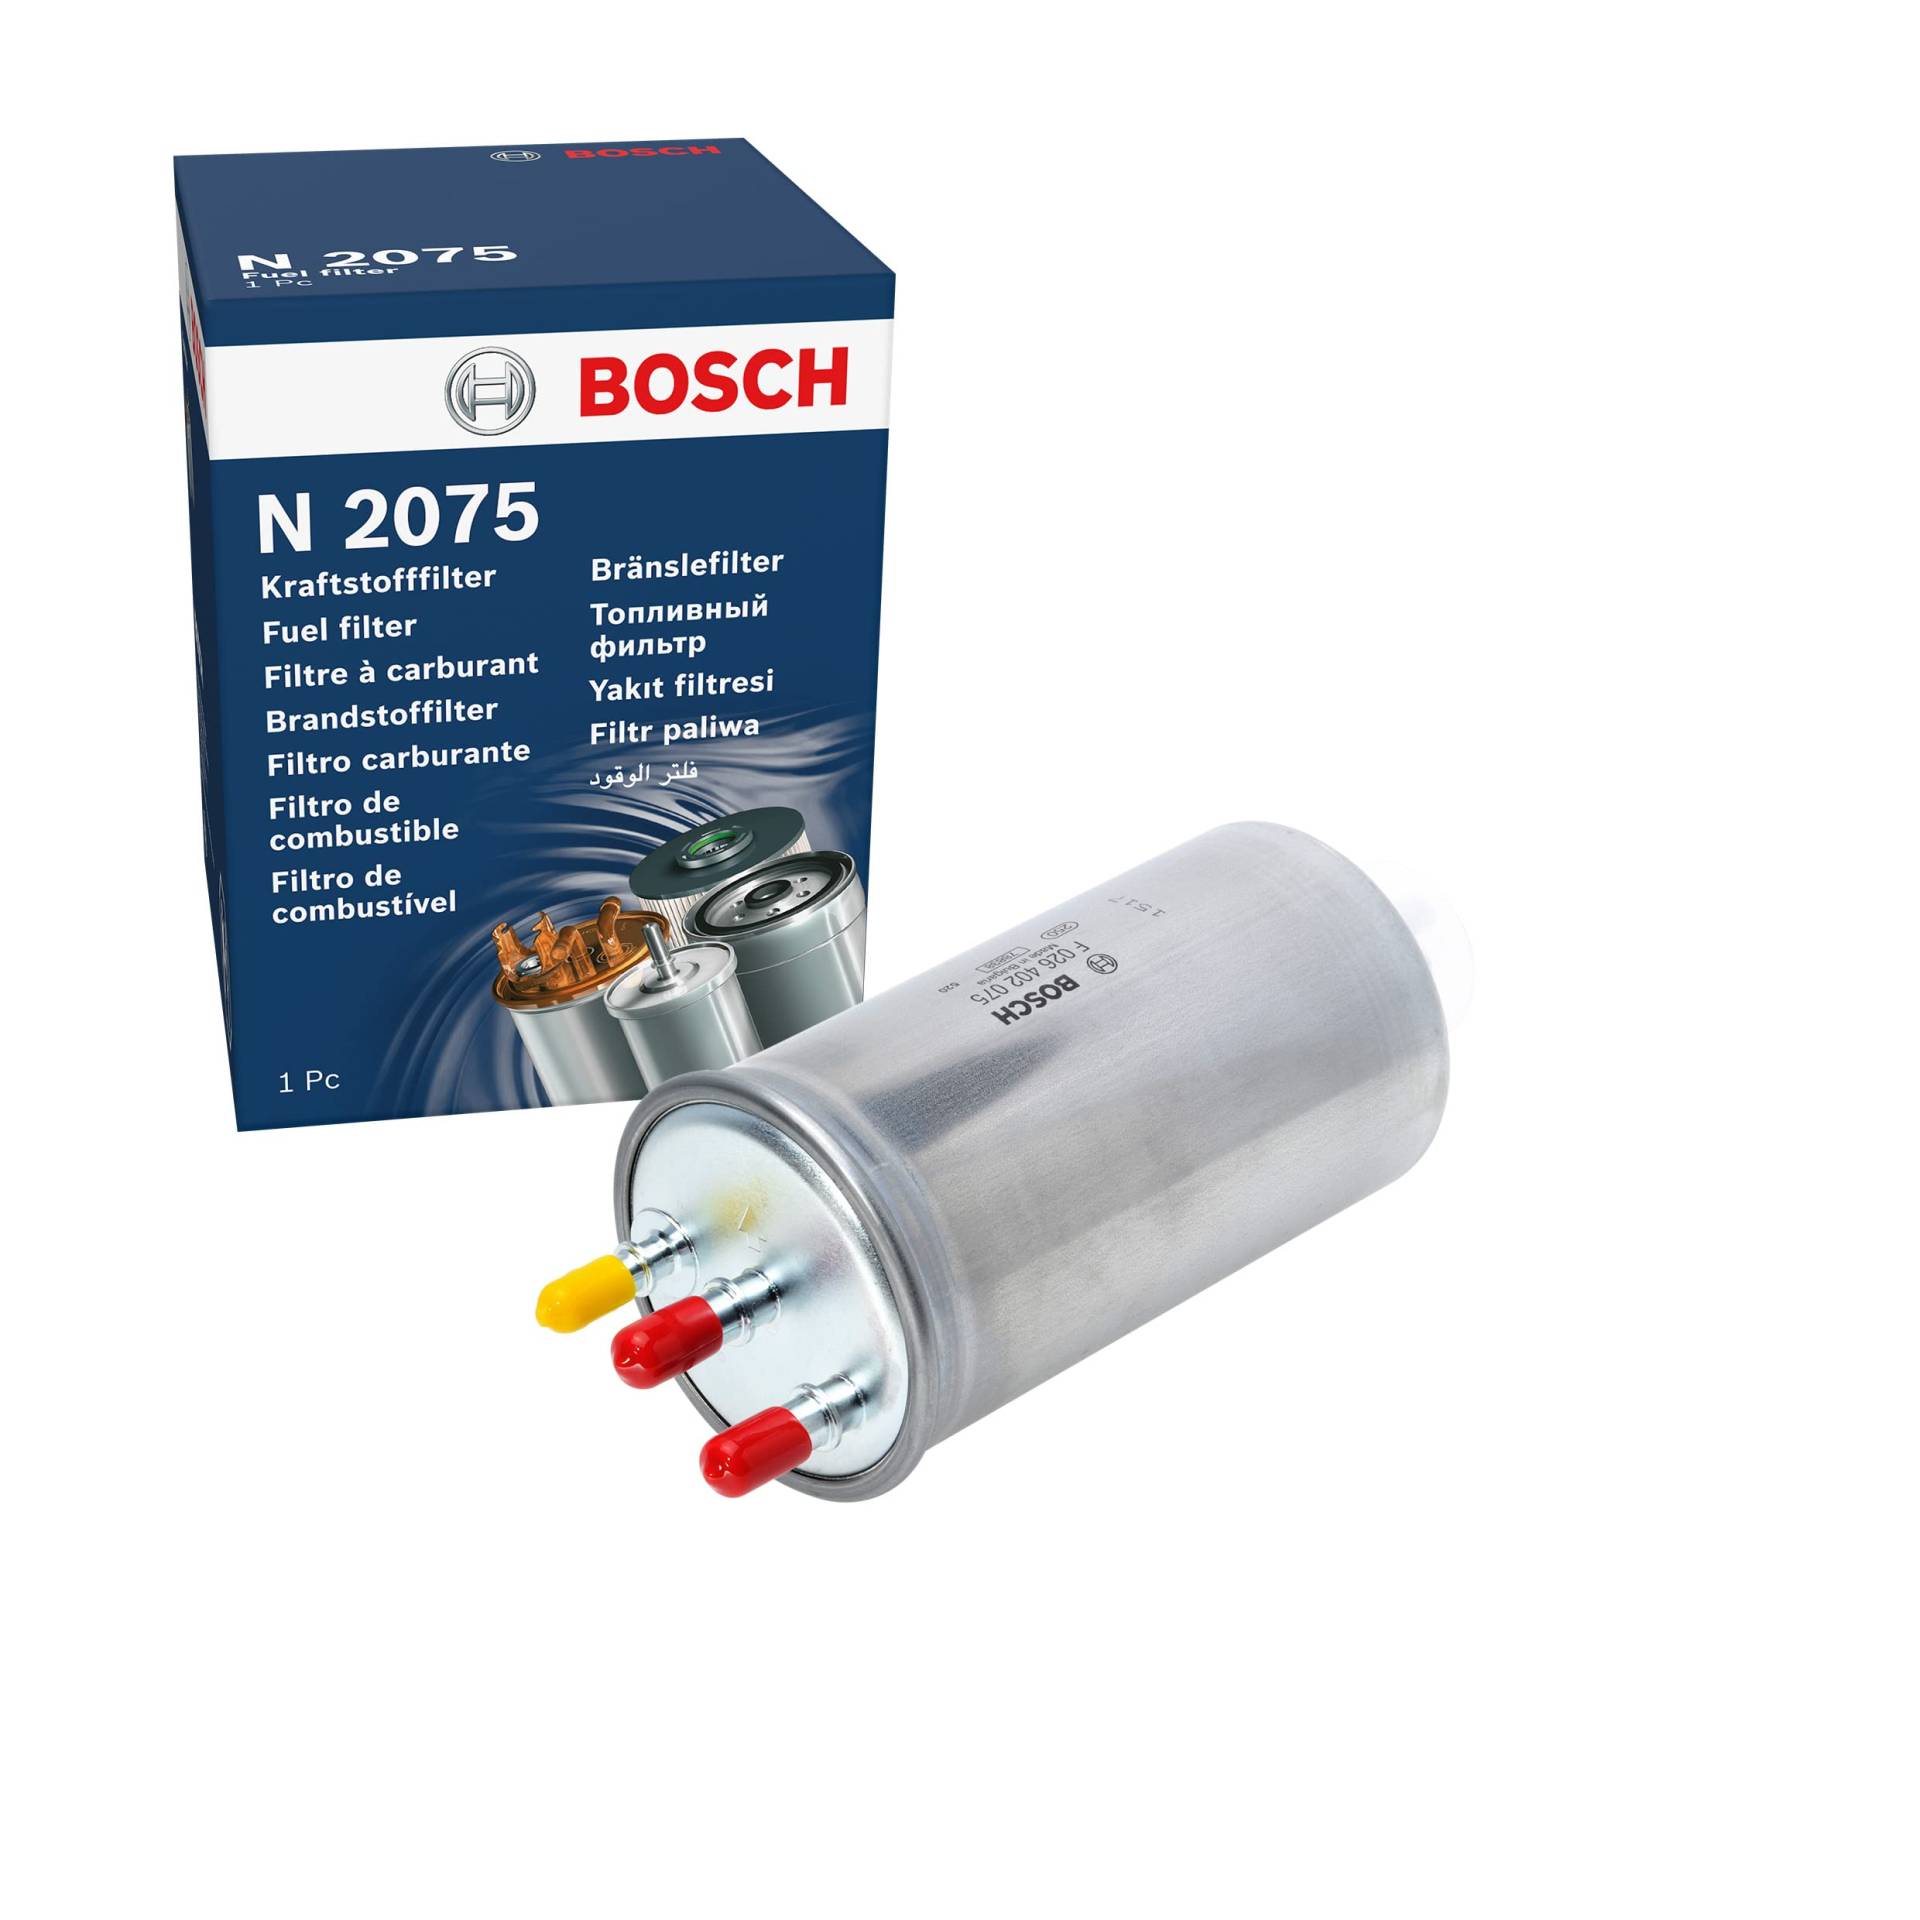 Bosch N2075 - Dieselfilter Auto von Bosch Automotive